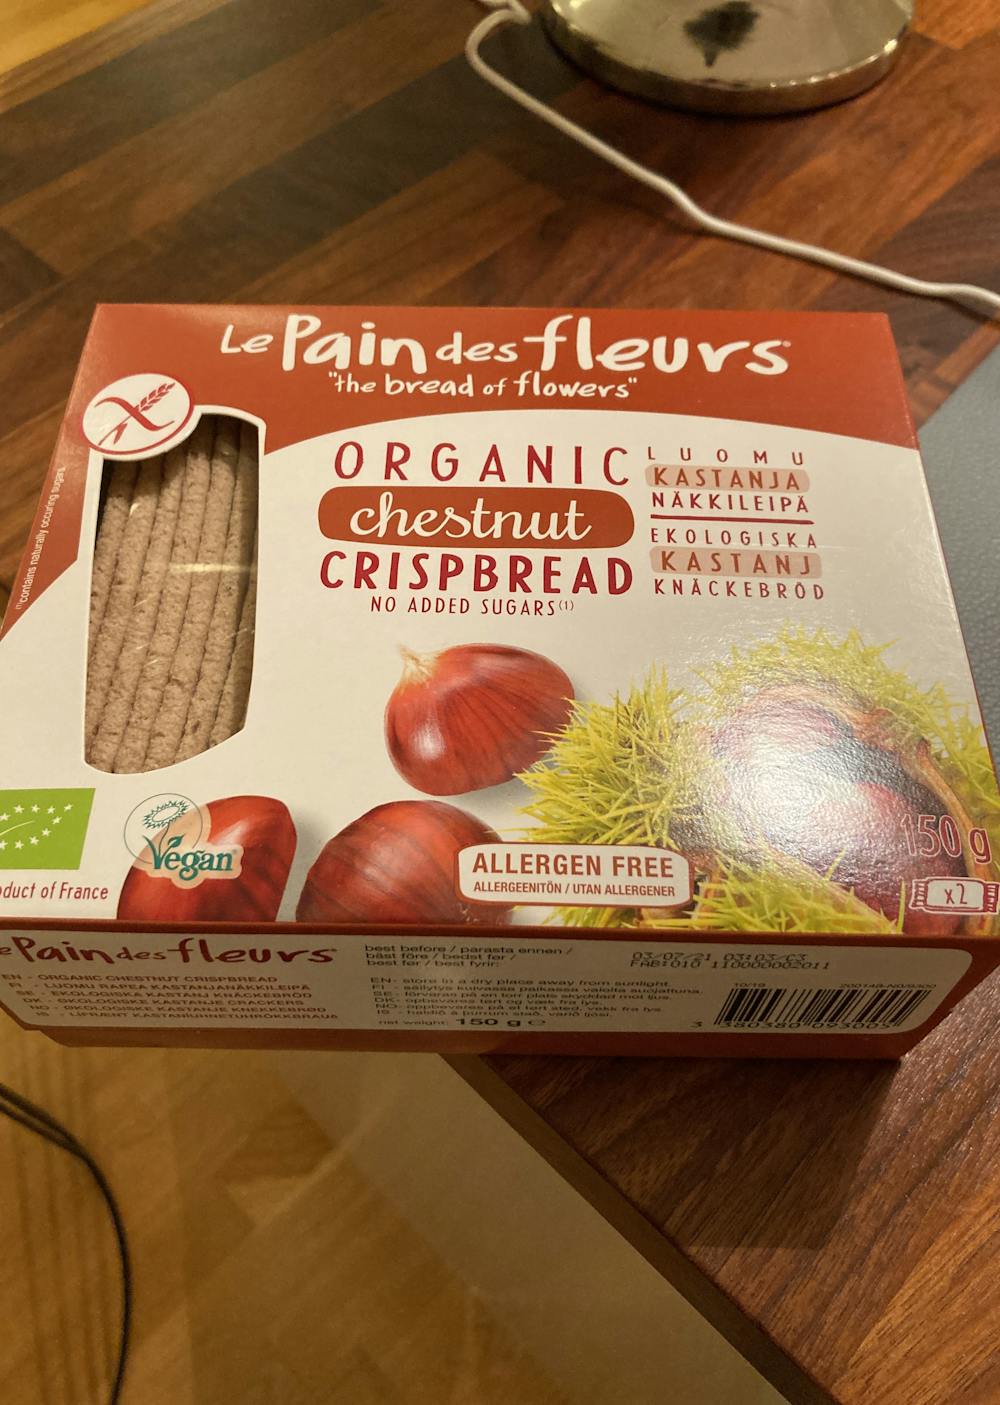 Organic chestnut crispbread, Le Pain des fleurs